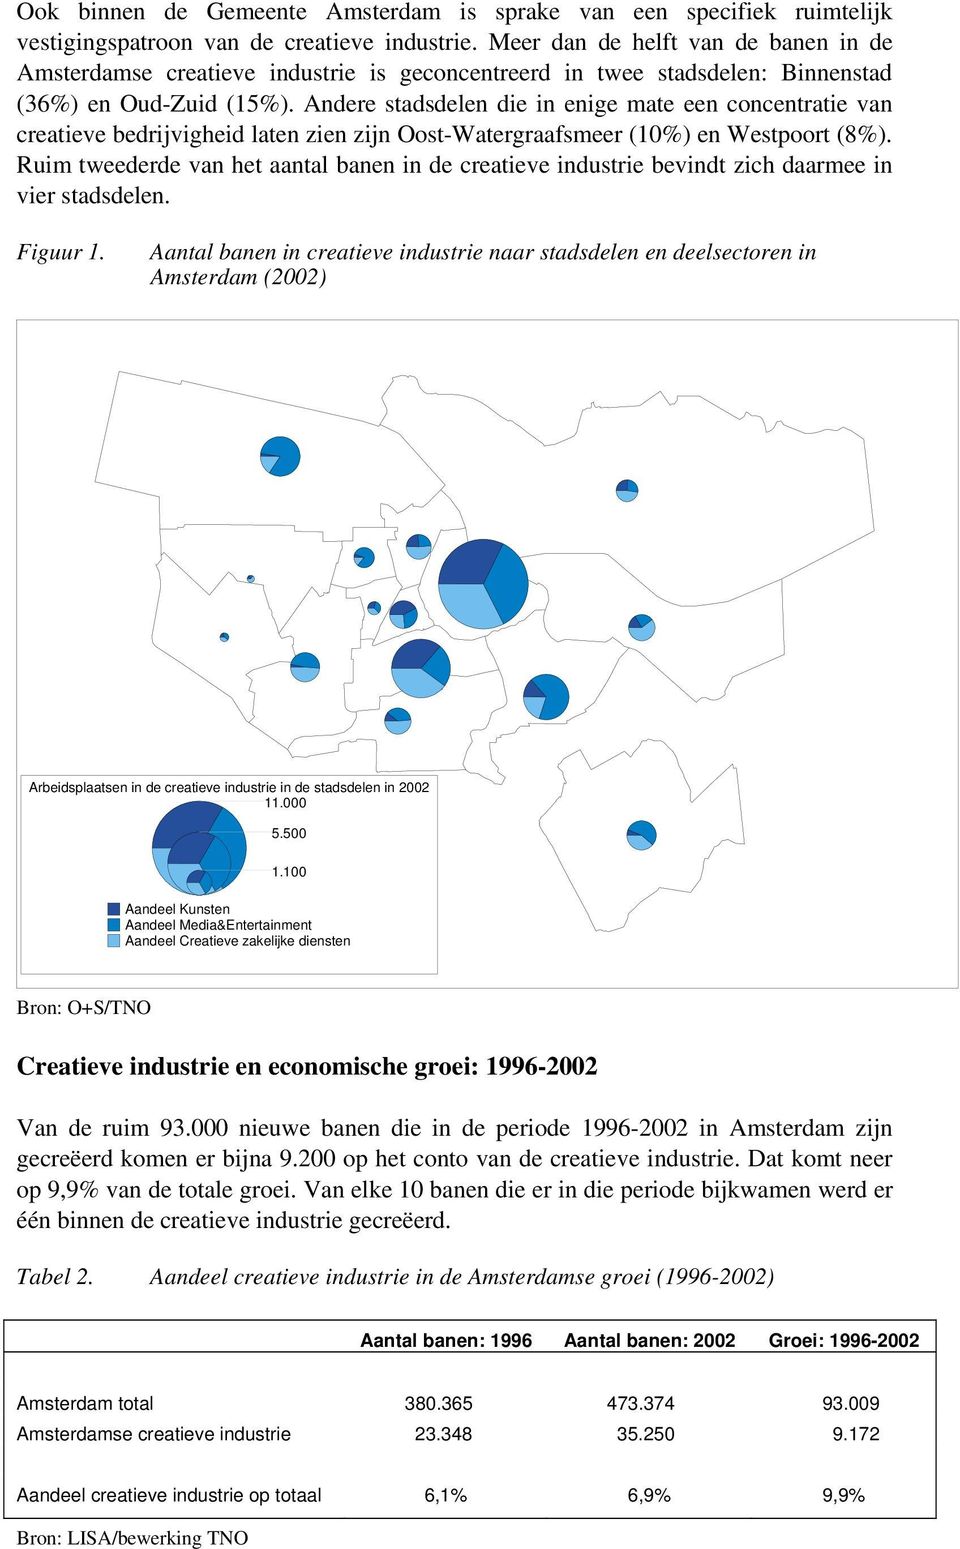 Andere stadsdelen die in enige mate een concentratie van creatieve bedrijvigheid laten zien zijn Oost-Watergraafsmeer (10%) en Westpoort (8%).